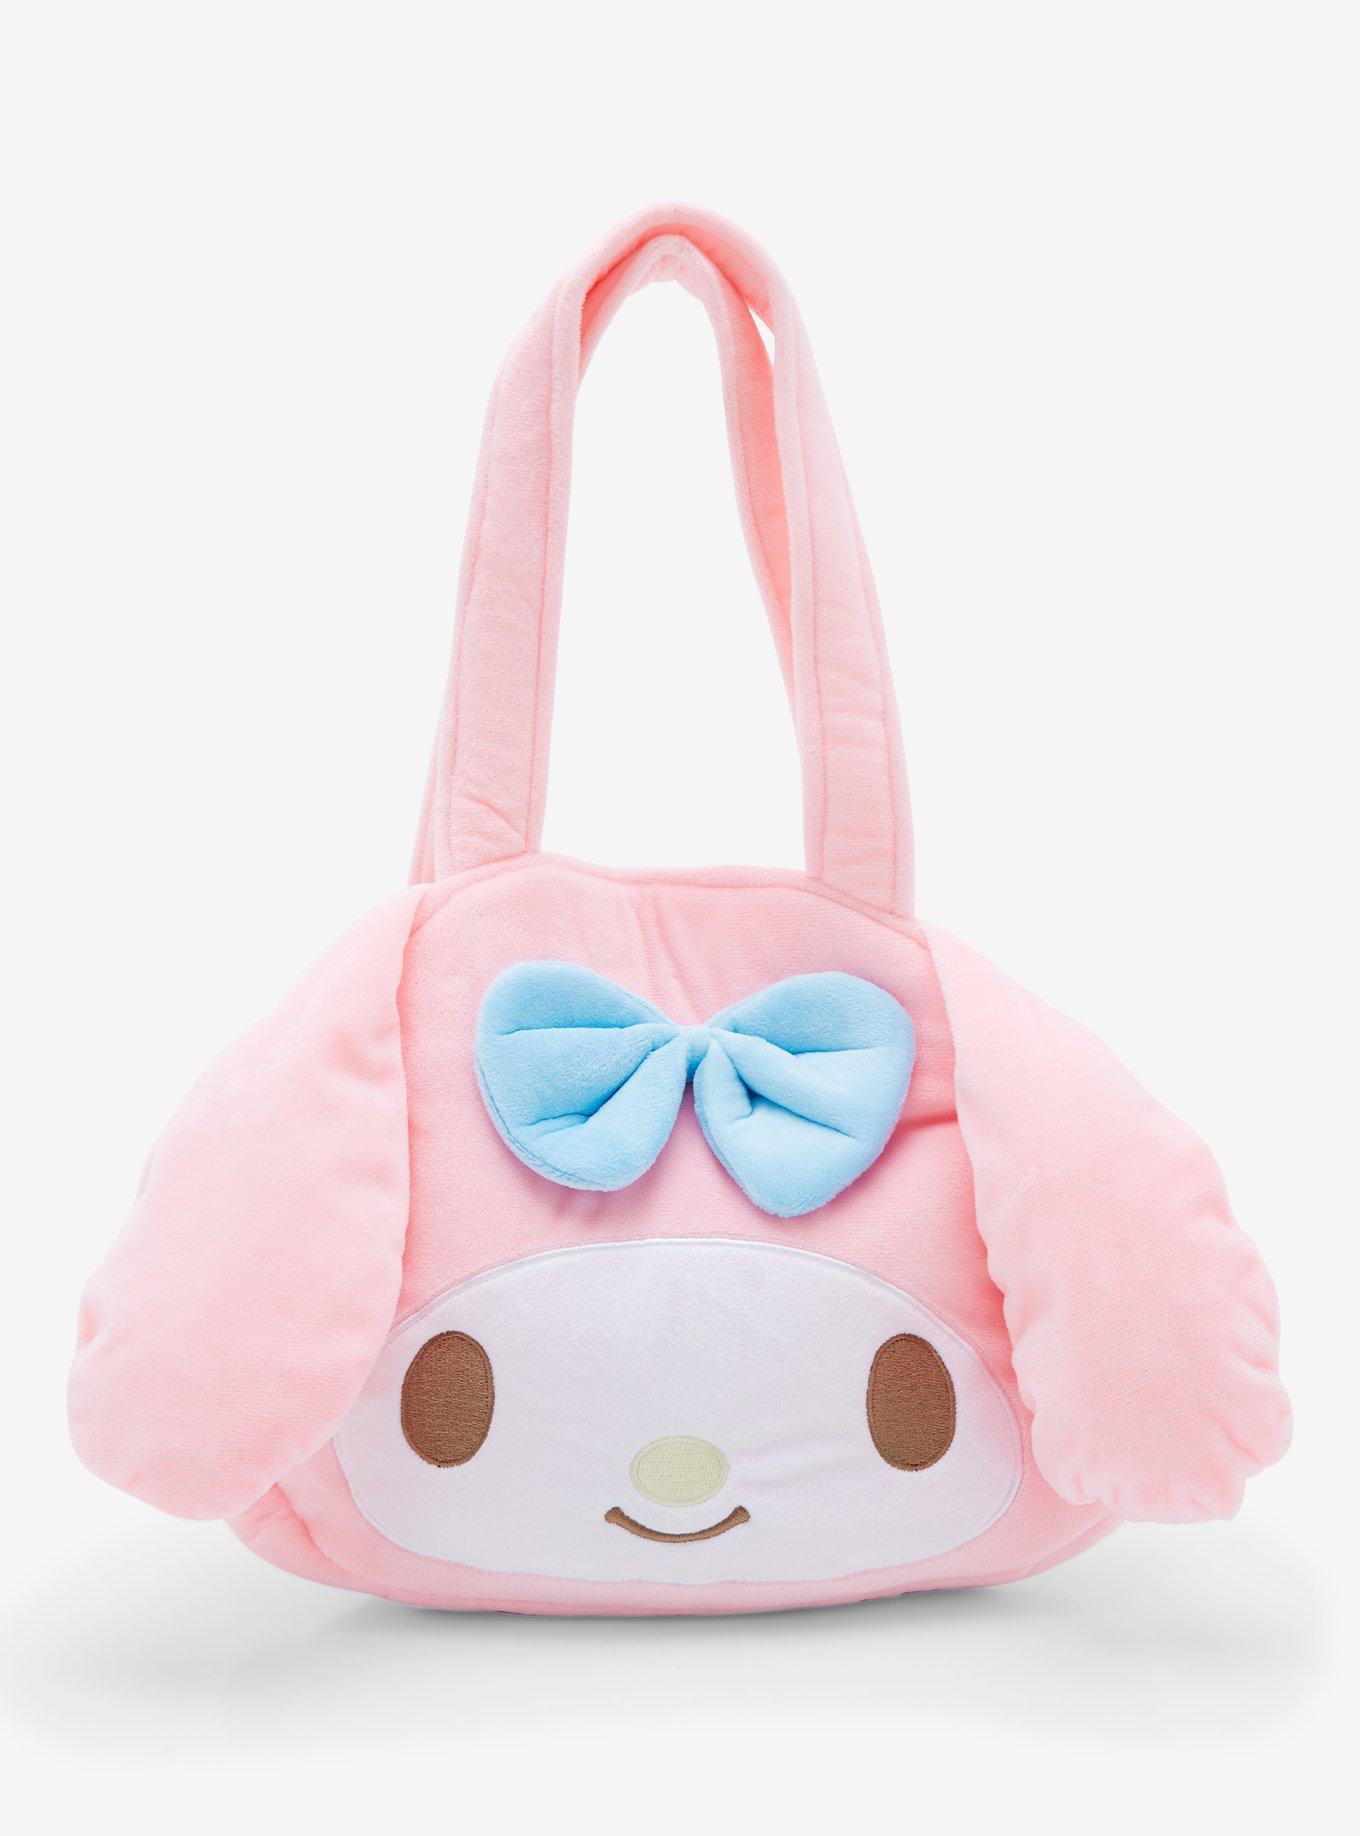 Mayko Bags Pink Tote Bag